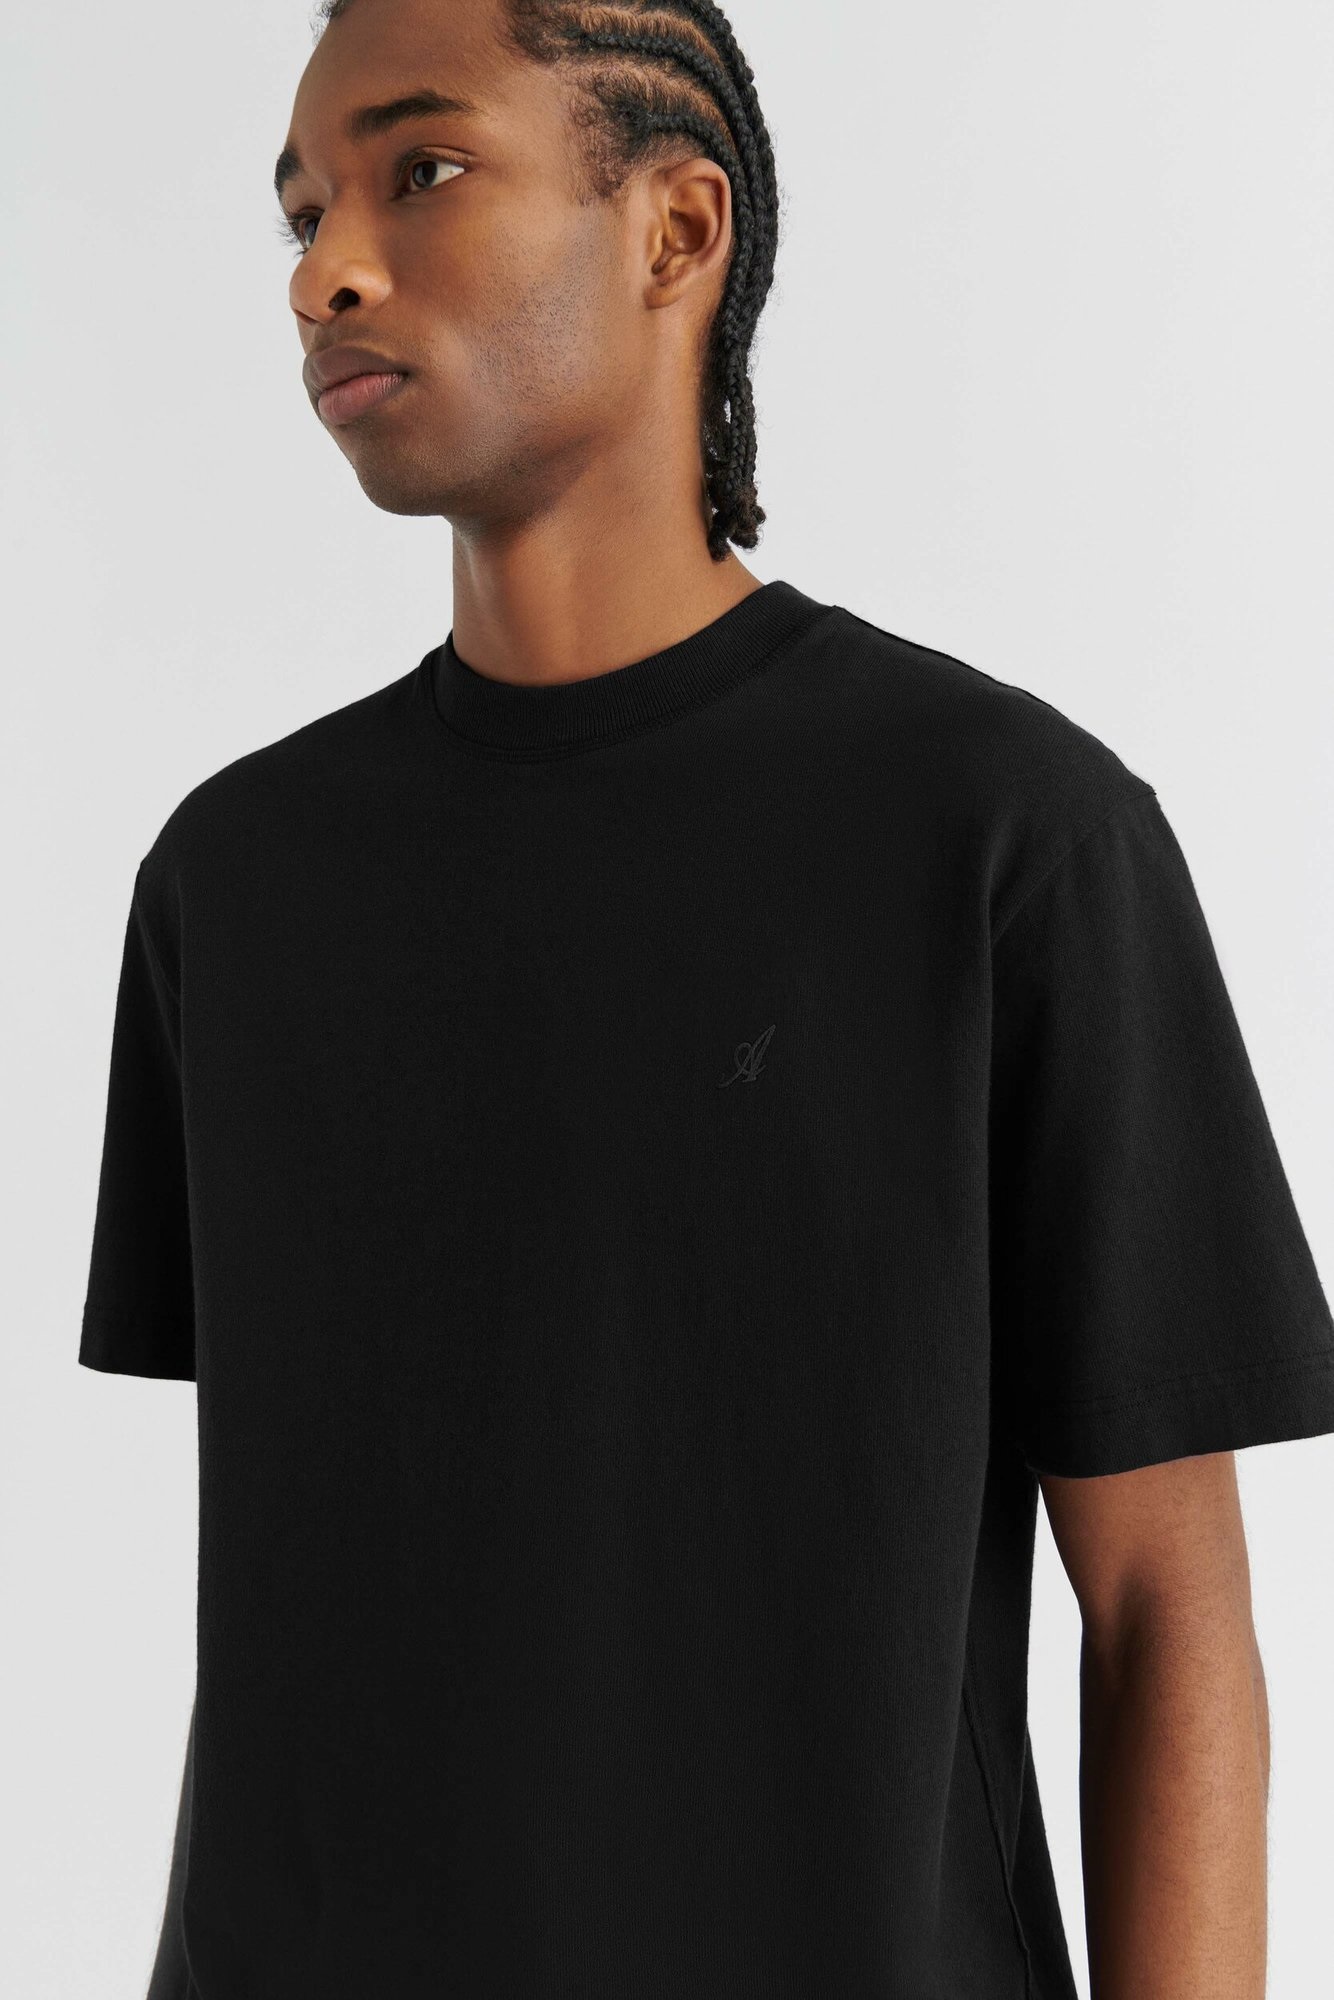 AXEL ARIGATO Signature T-Shirt in Black